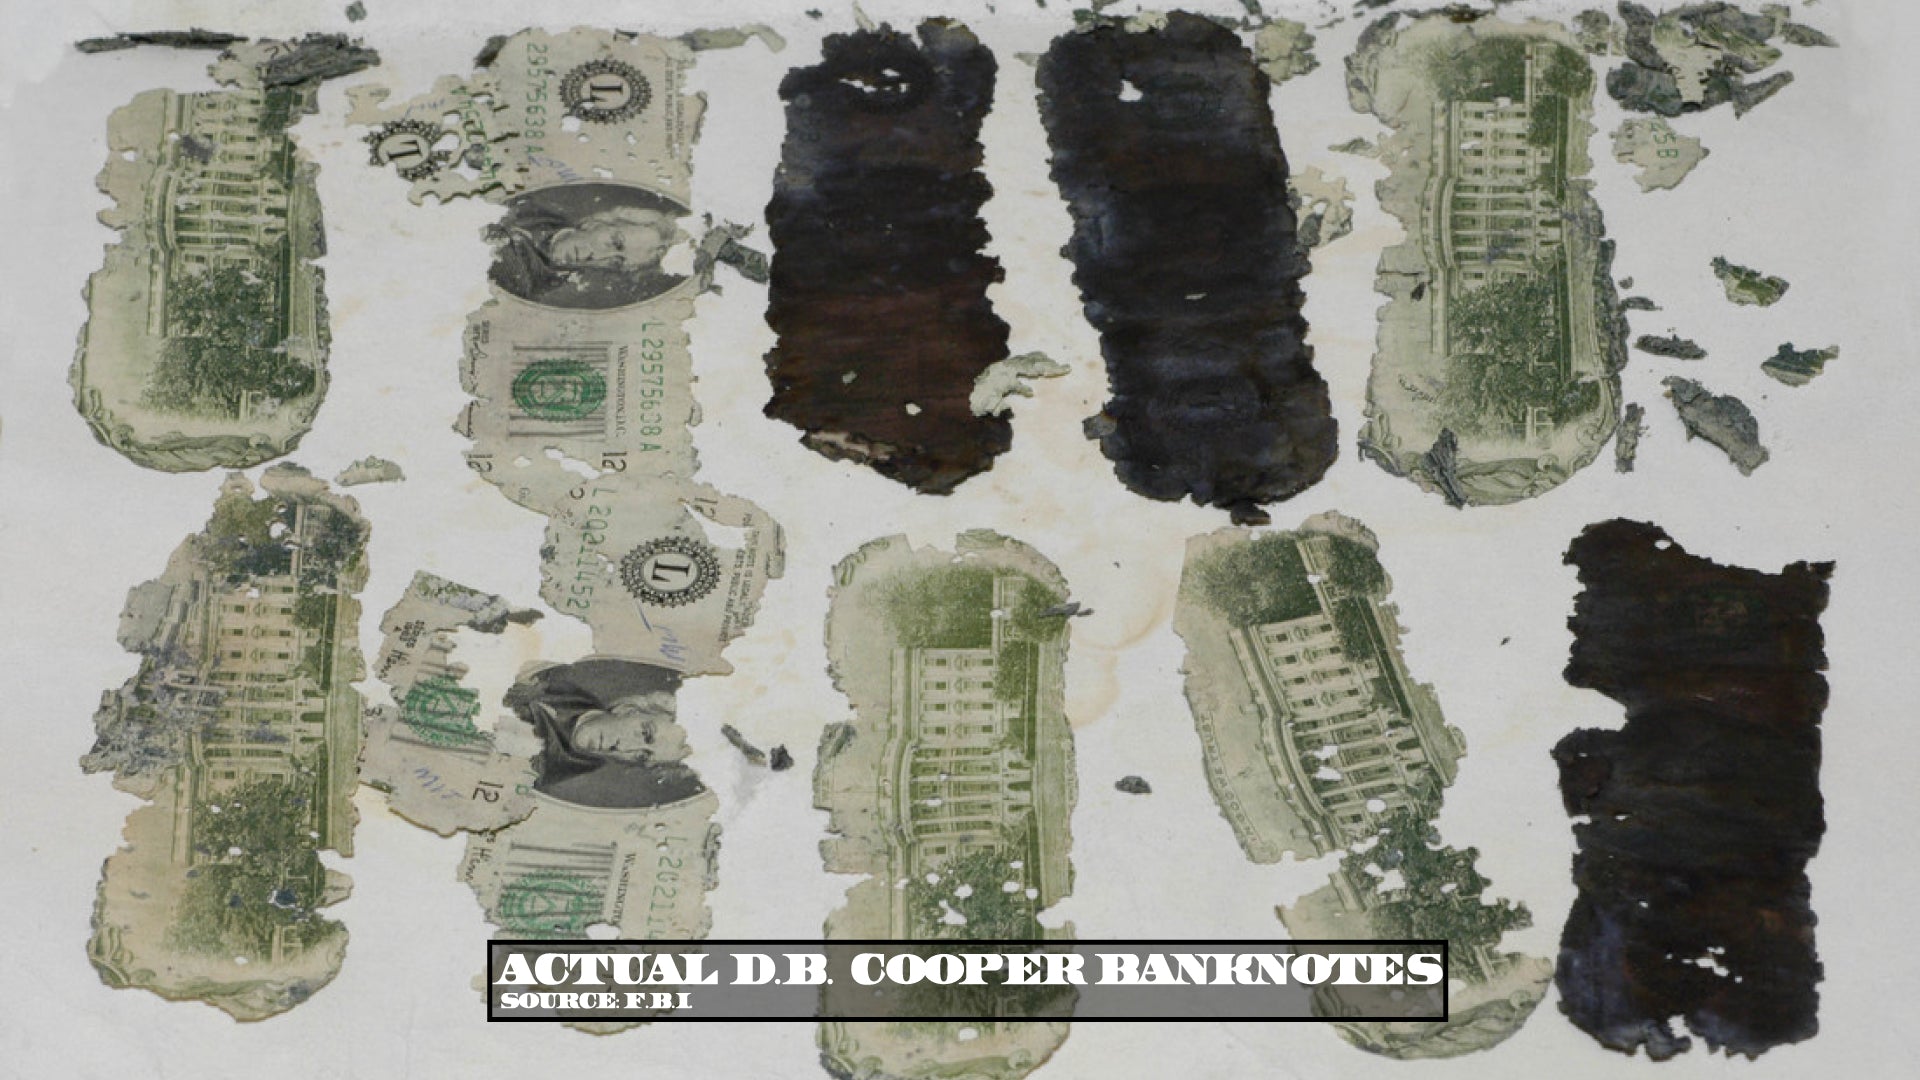 D.B. Cooper Banknotes